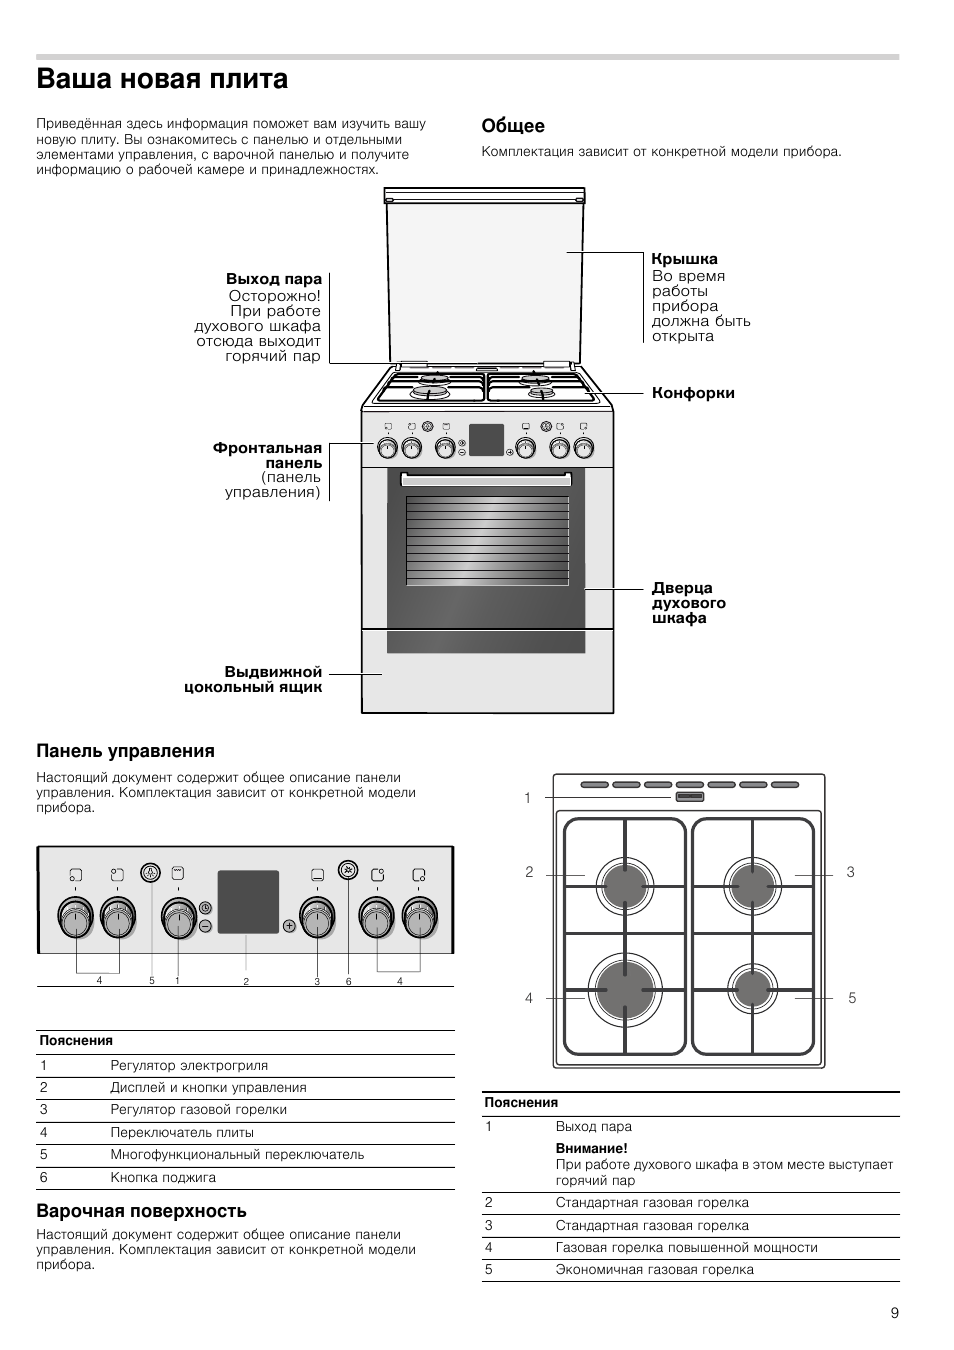 Плита гефест газовая 4 х конфорочная с духовым шкафом температура в духовке инструкция по применению